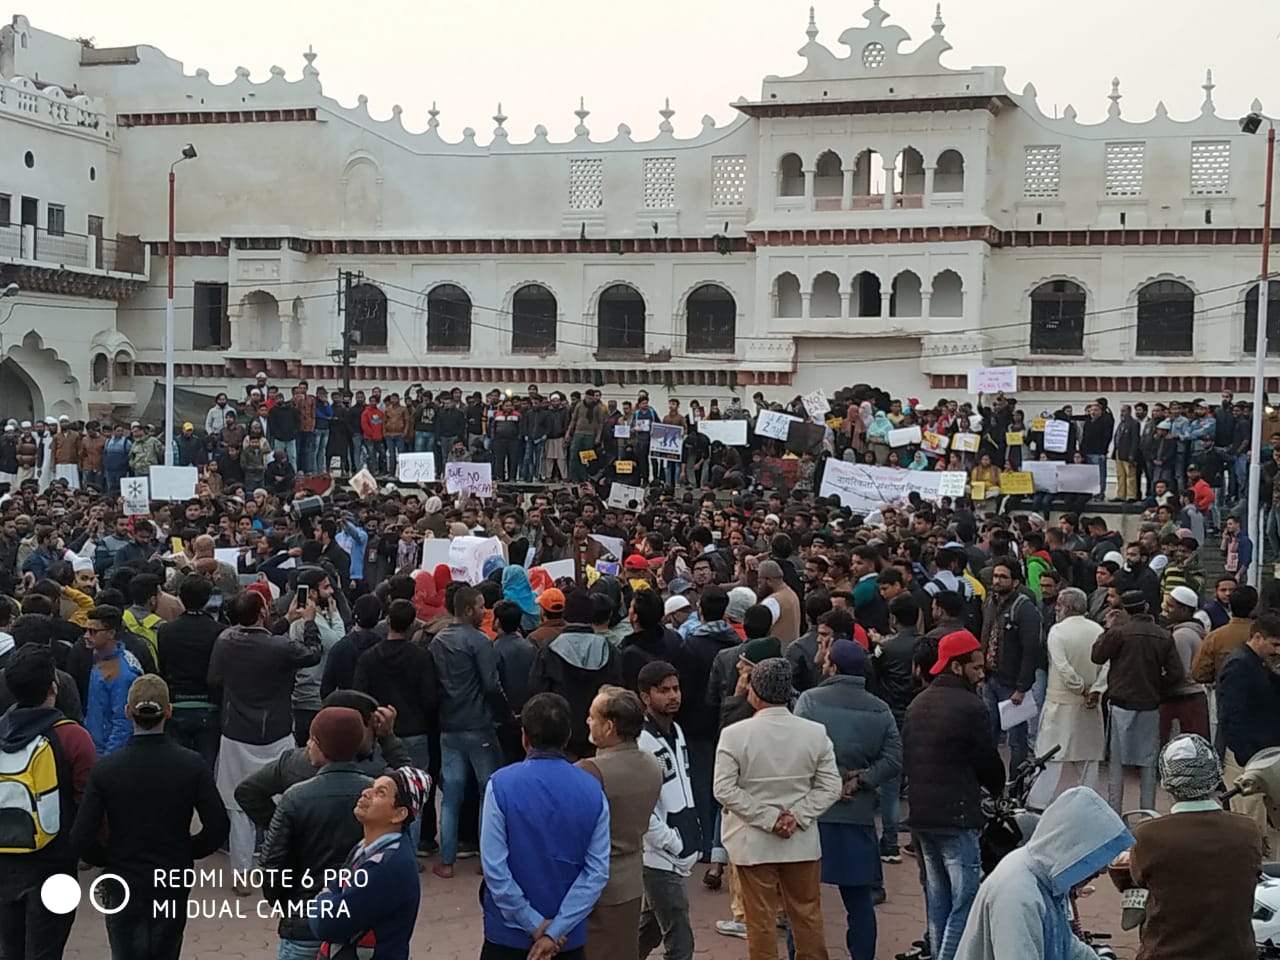 जामिया एवं अलीगढ़ यूनिवर्सिटी के विद्यार्थियों पर पुलिस हिंसा के ख़िलाफ़ भोपाल में हुआ ज़बर्दस्त विरोध प्रदर्शन | New India Times